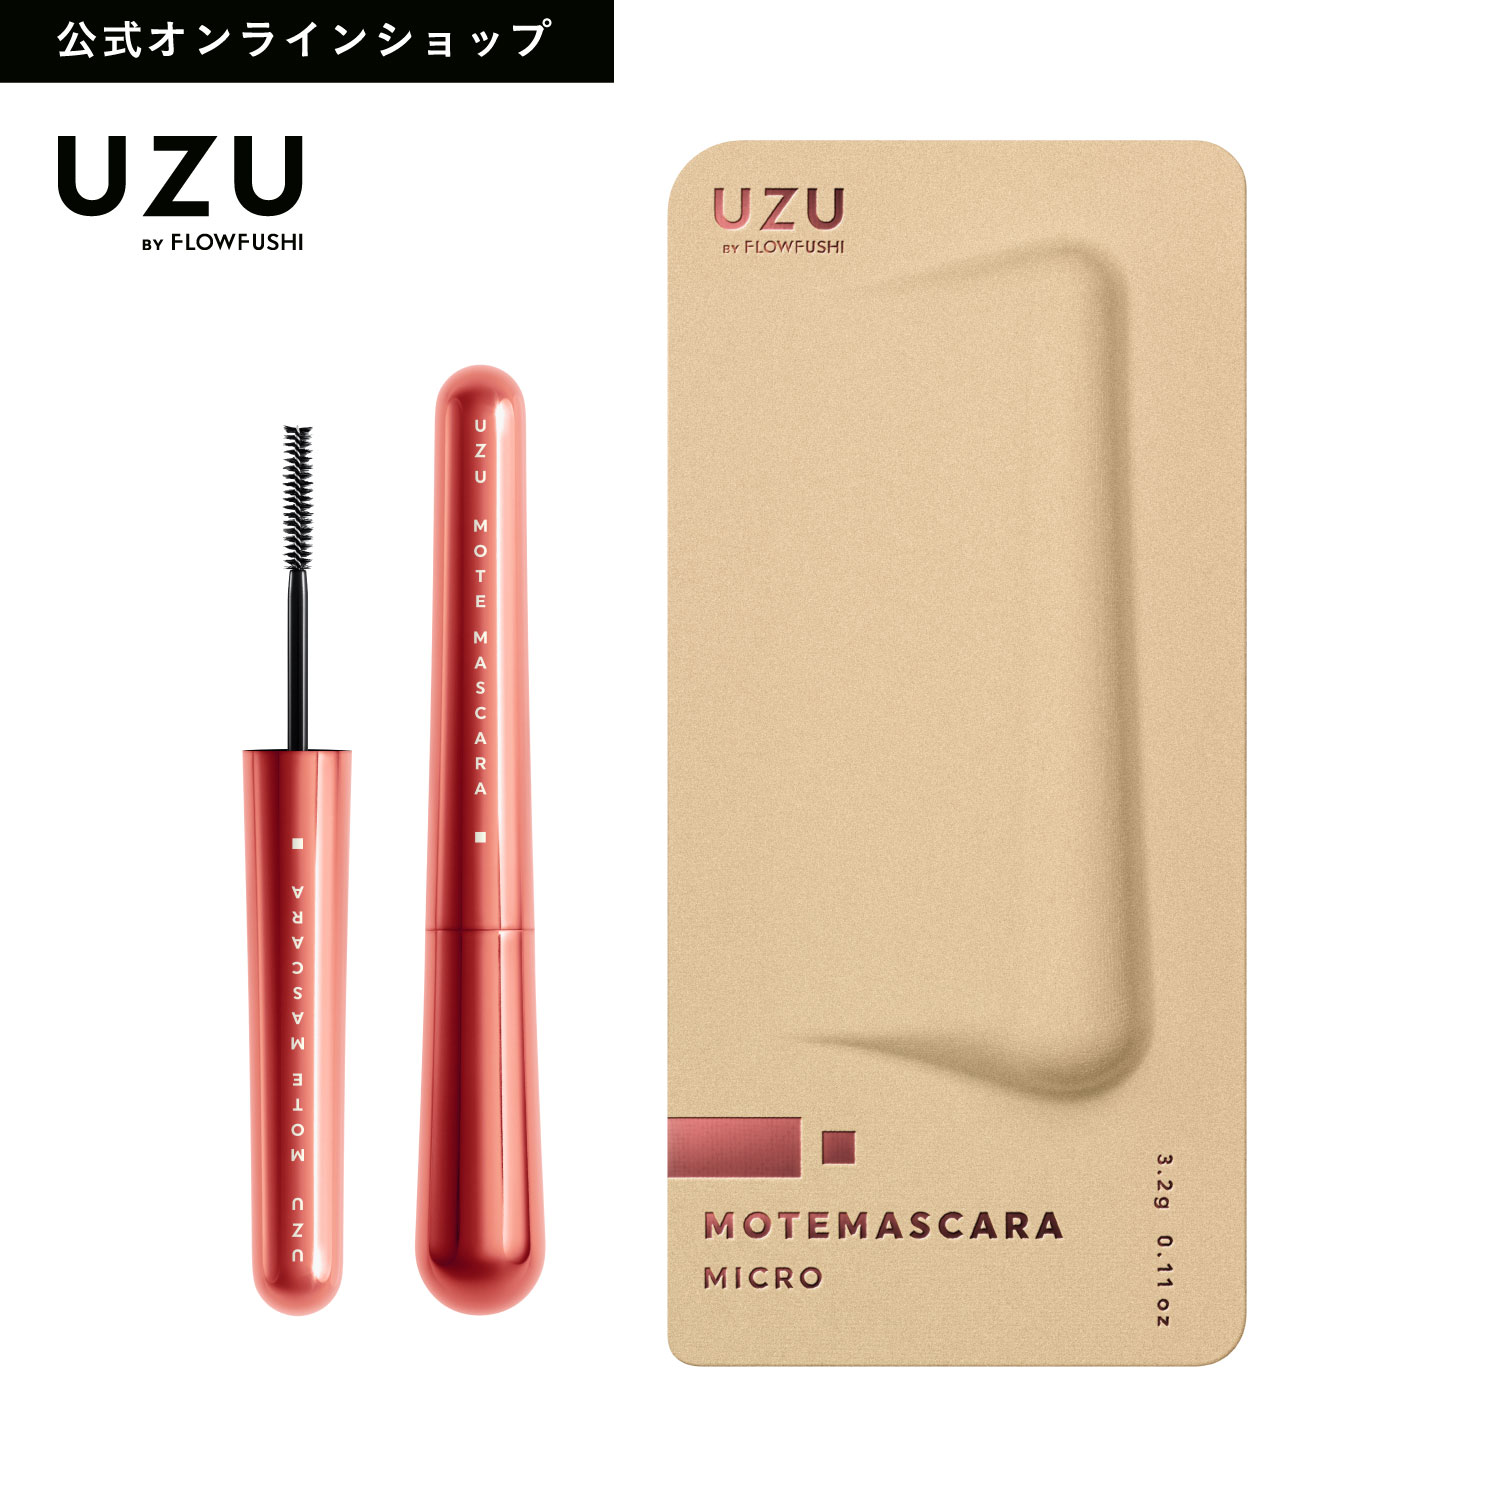 【特別SALE33%OFF】【公式限定】UZU 38℃ MOTE MASCARA|RED(レッド)|カラーマスカラ 赤マスカラ まつげケア お湯オフ 日本製 化粧品 赤 [送料無料]